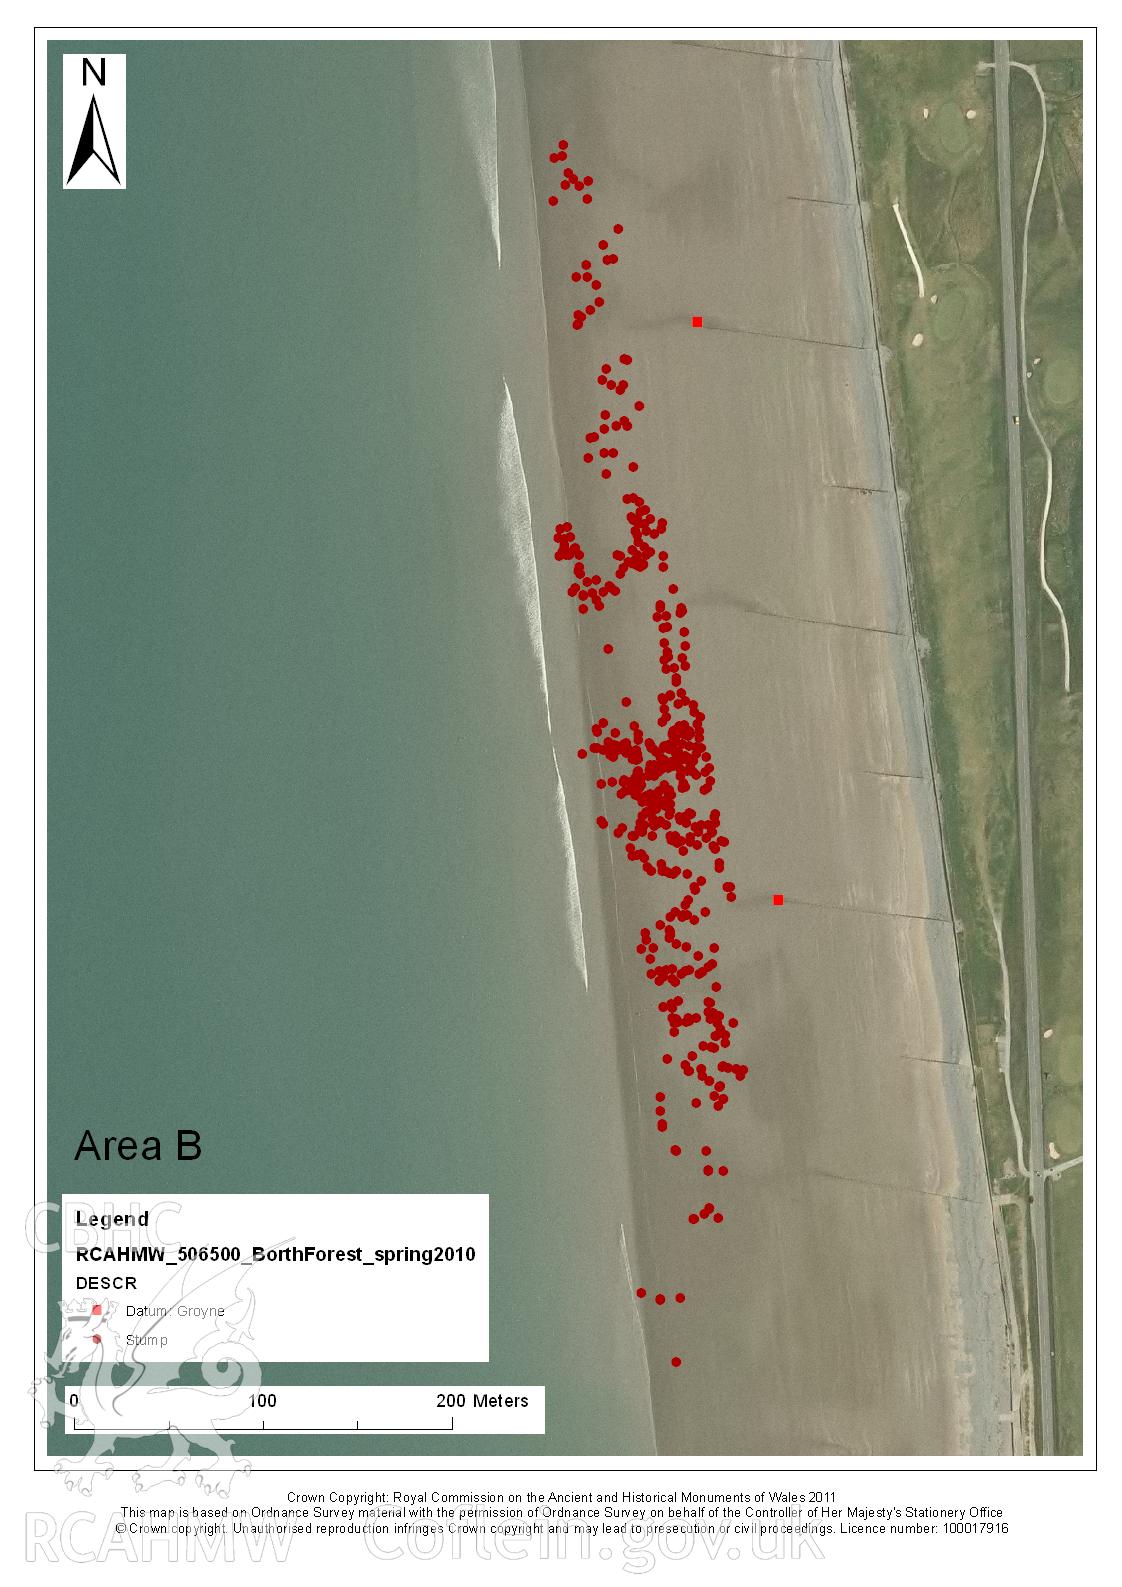 Digital image relating to Level 1 Survey, Borth Submerged Forest: Area B.